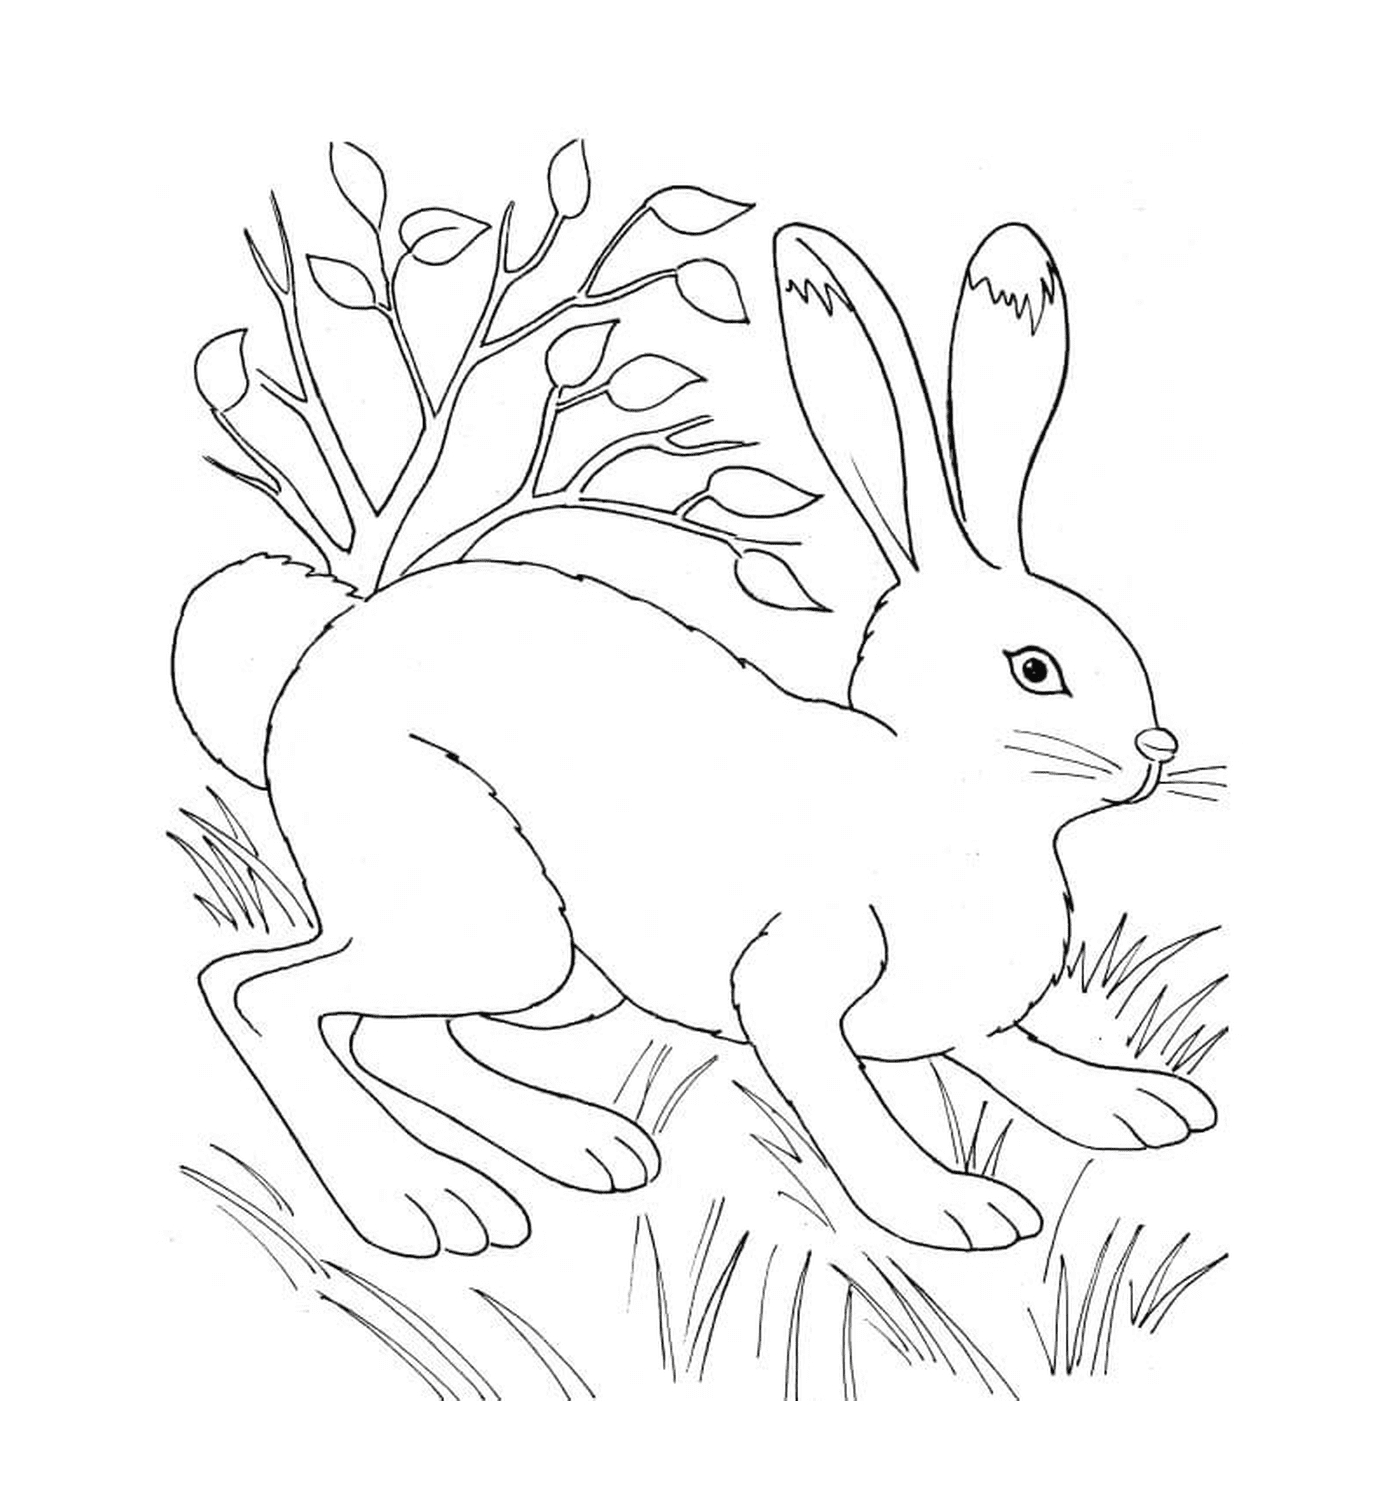  植物附近天然的兔子 